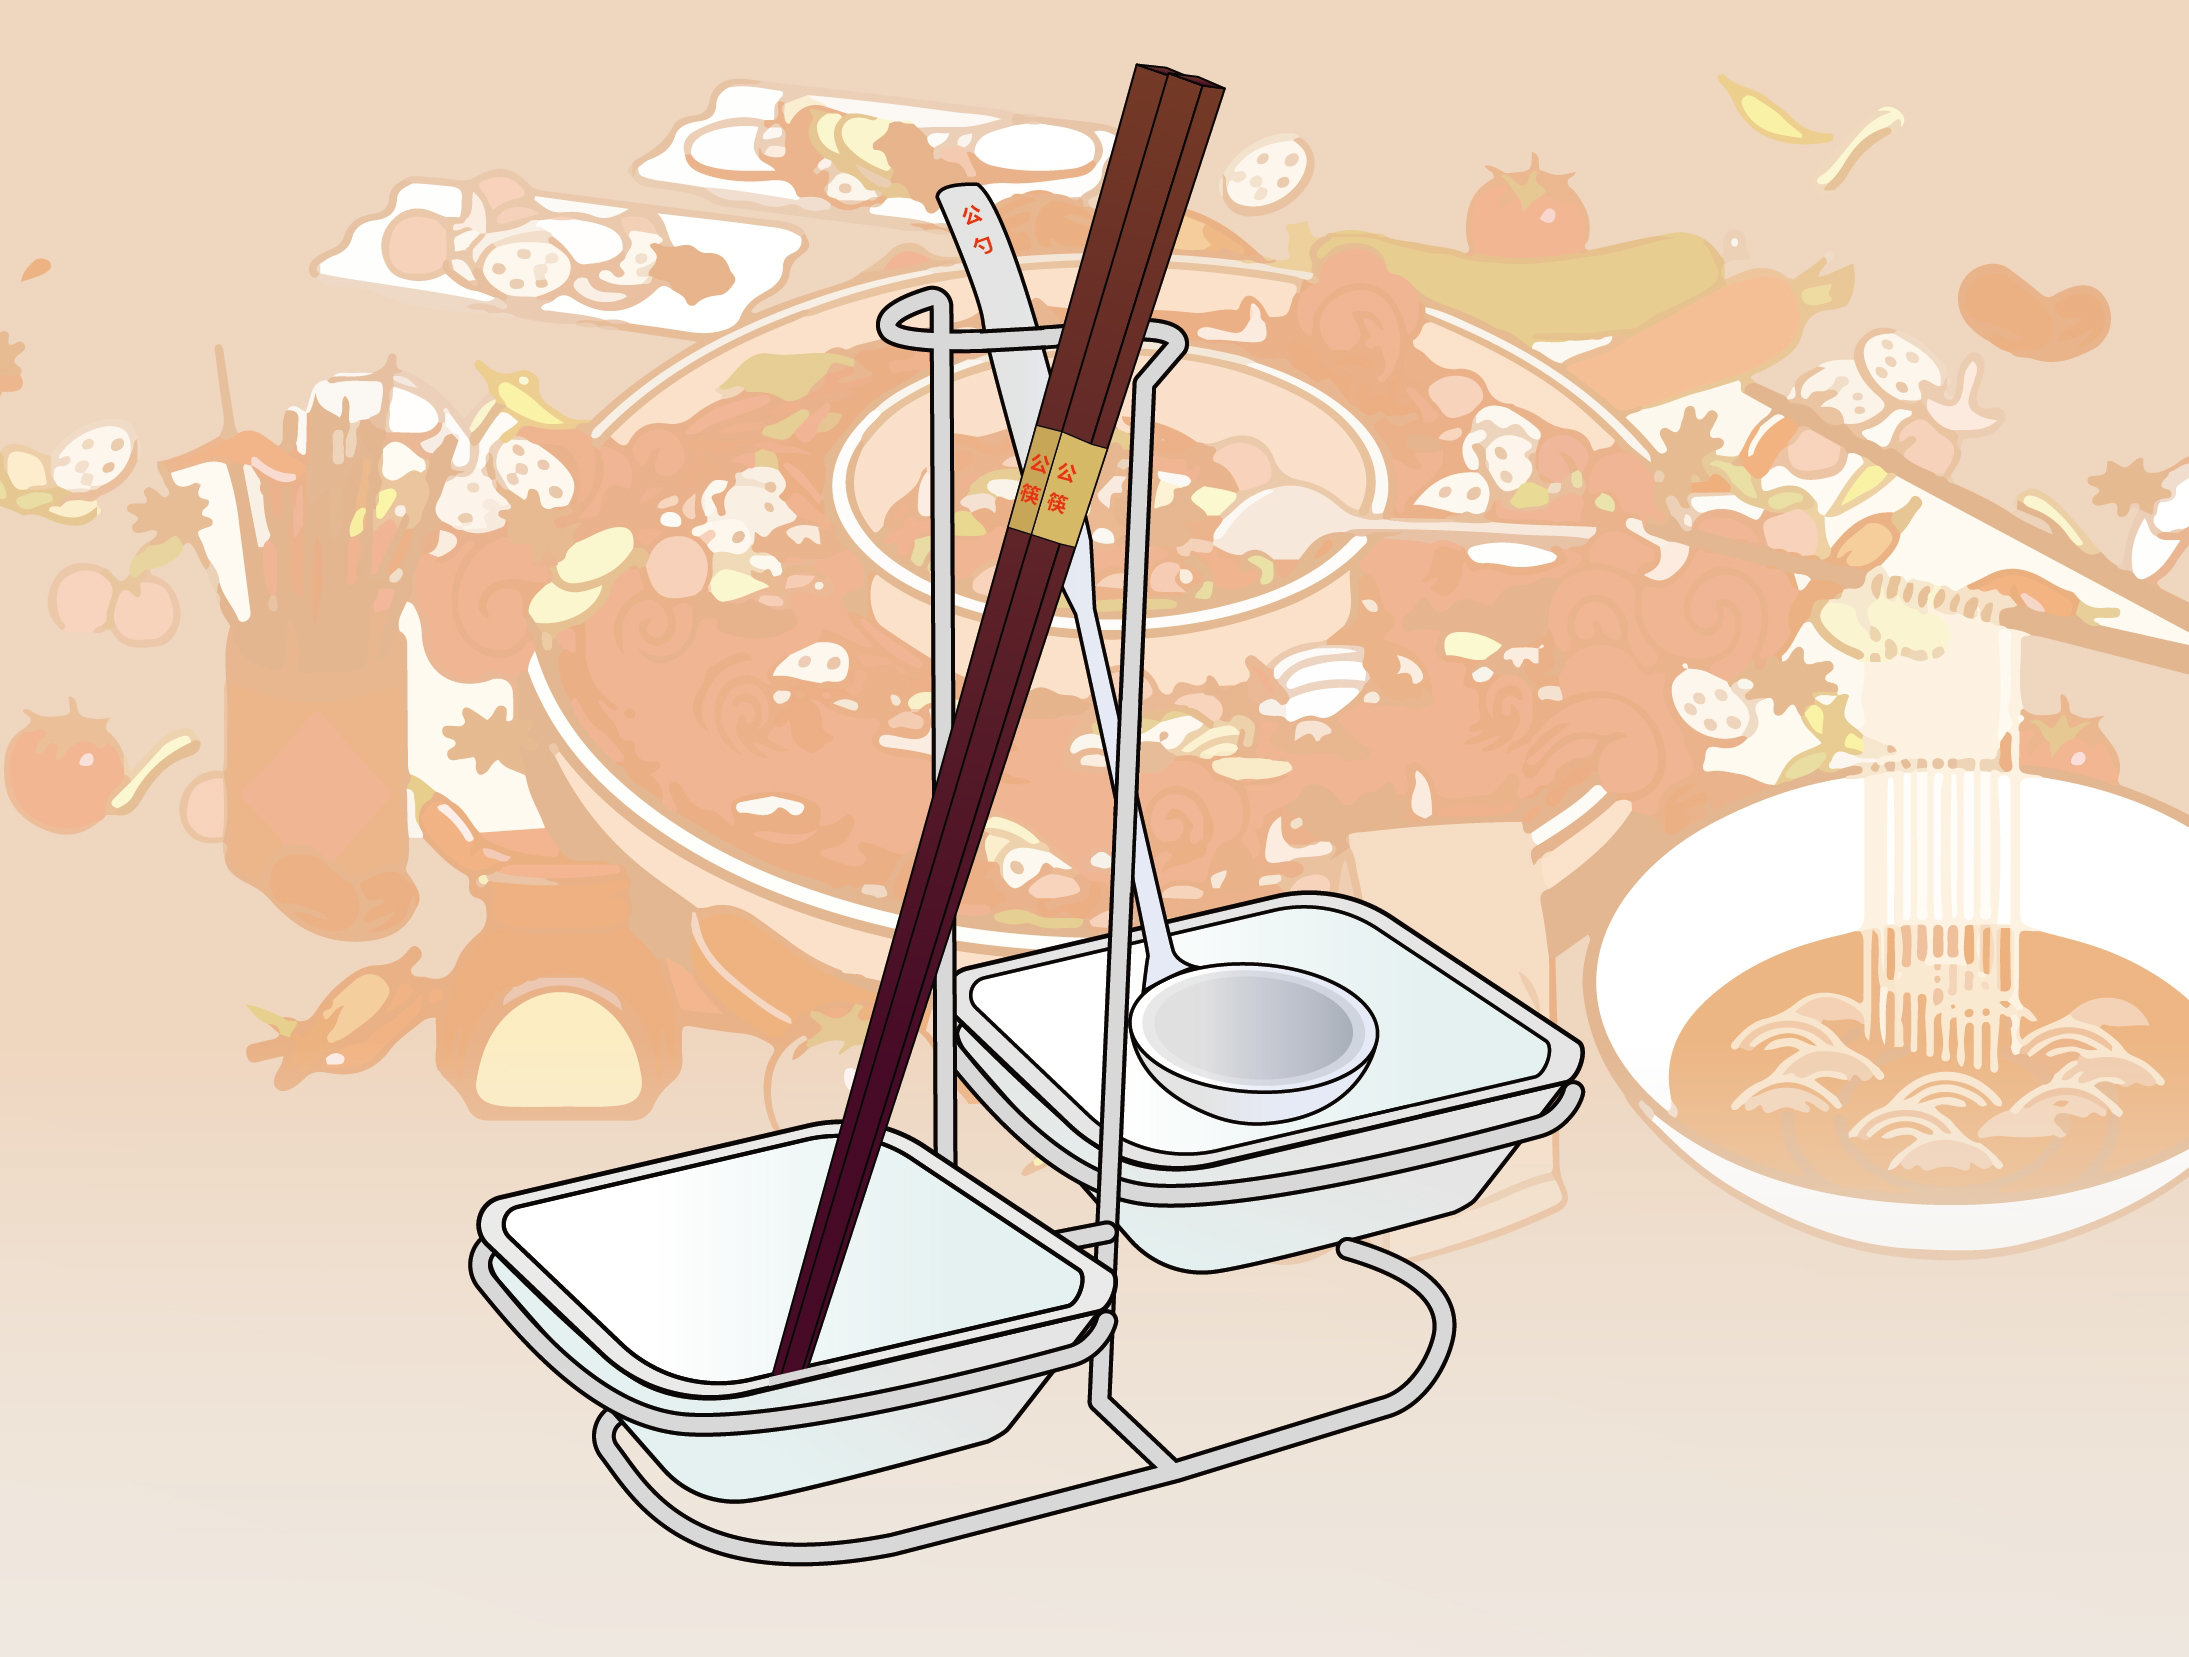 公筷公勺图画图片